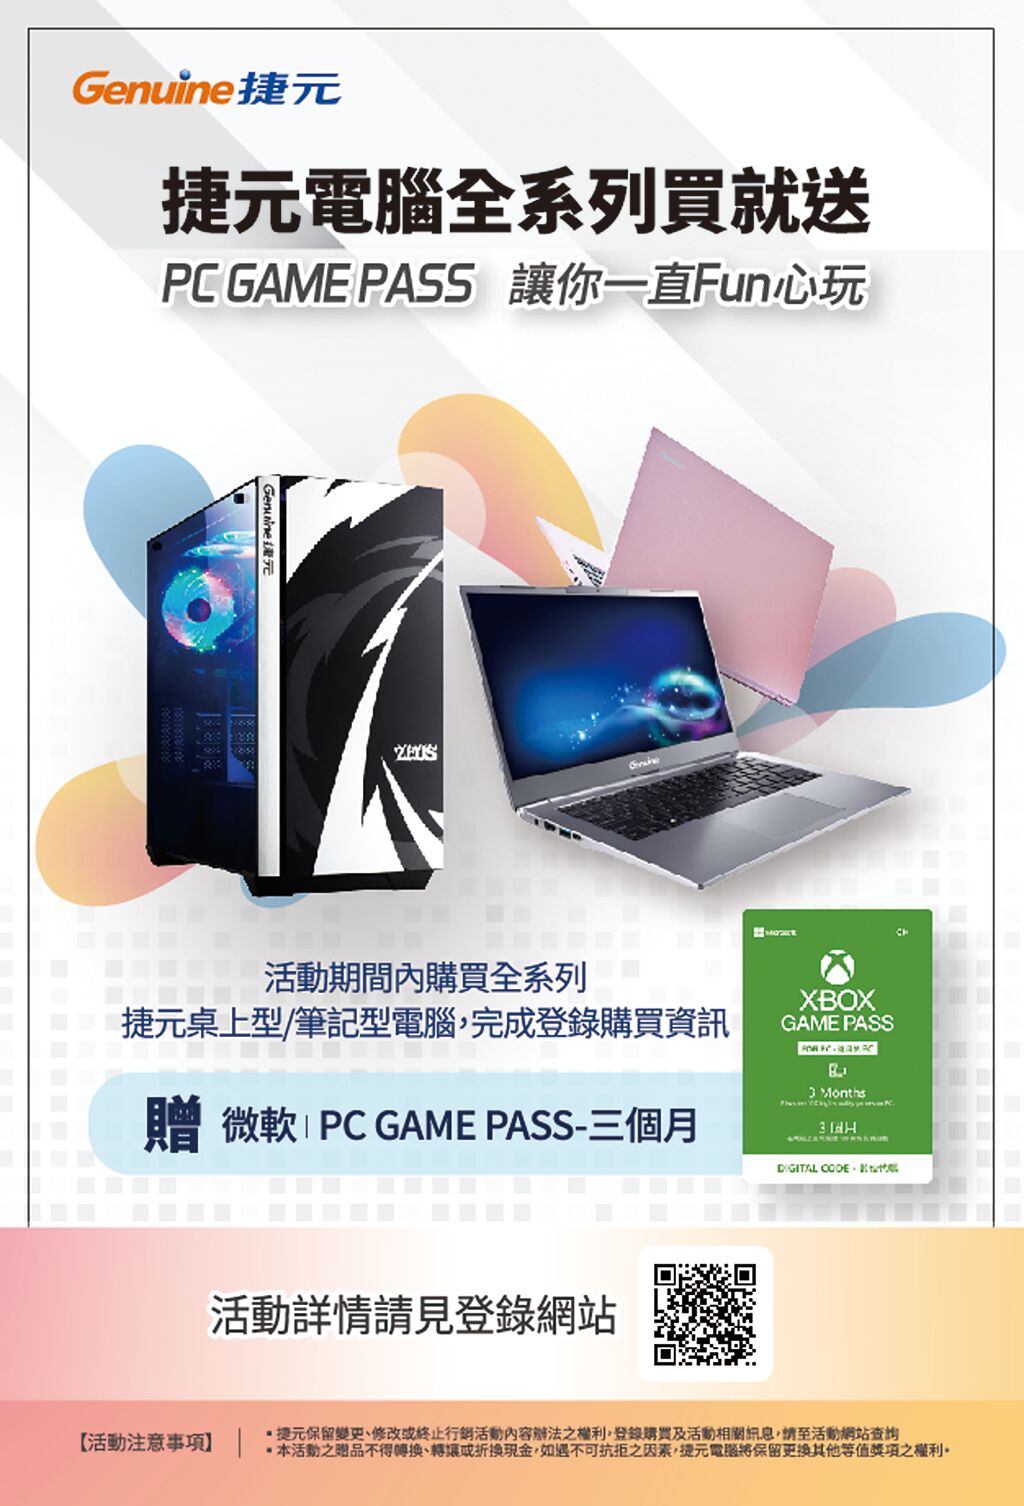 現在購買Genuine捷元宙斯機還送微軟PC GAME PASS三個月，好康滿點，讓你Fun心玩。圖／業者提供